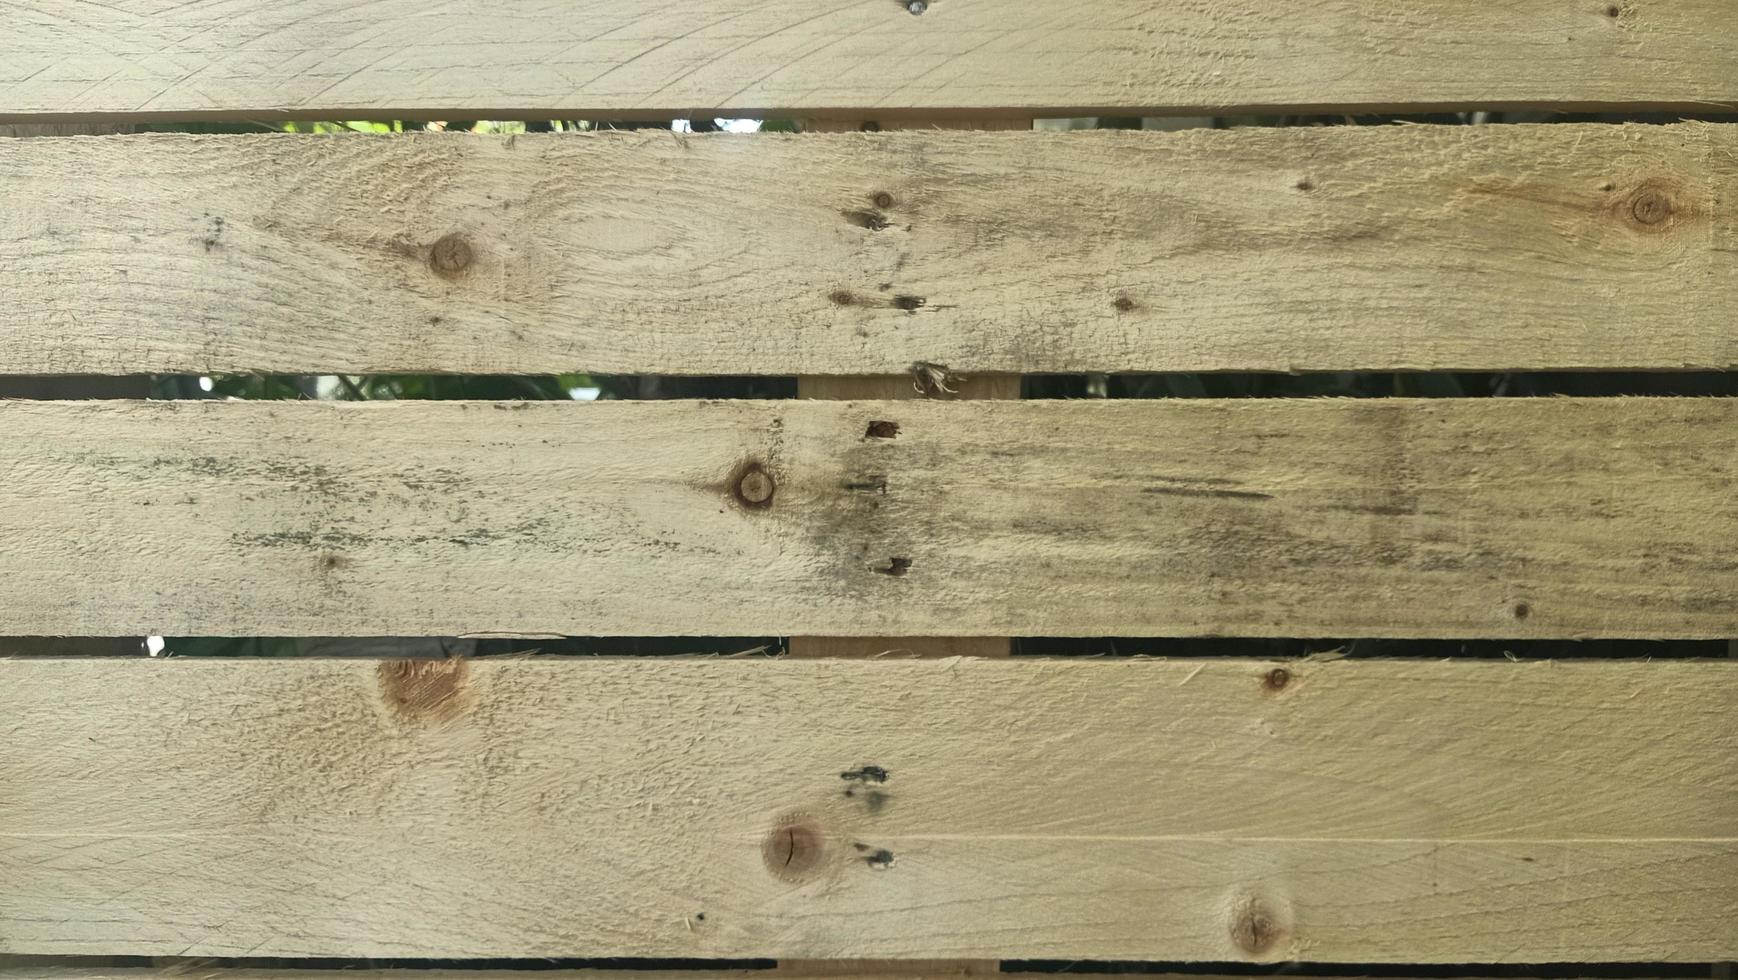 houtstructuur van pallet is ruw en niet strak gerangschikt, gratis foto achtergrond close-up van de houten planken